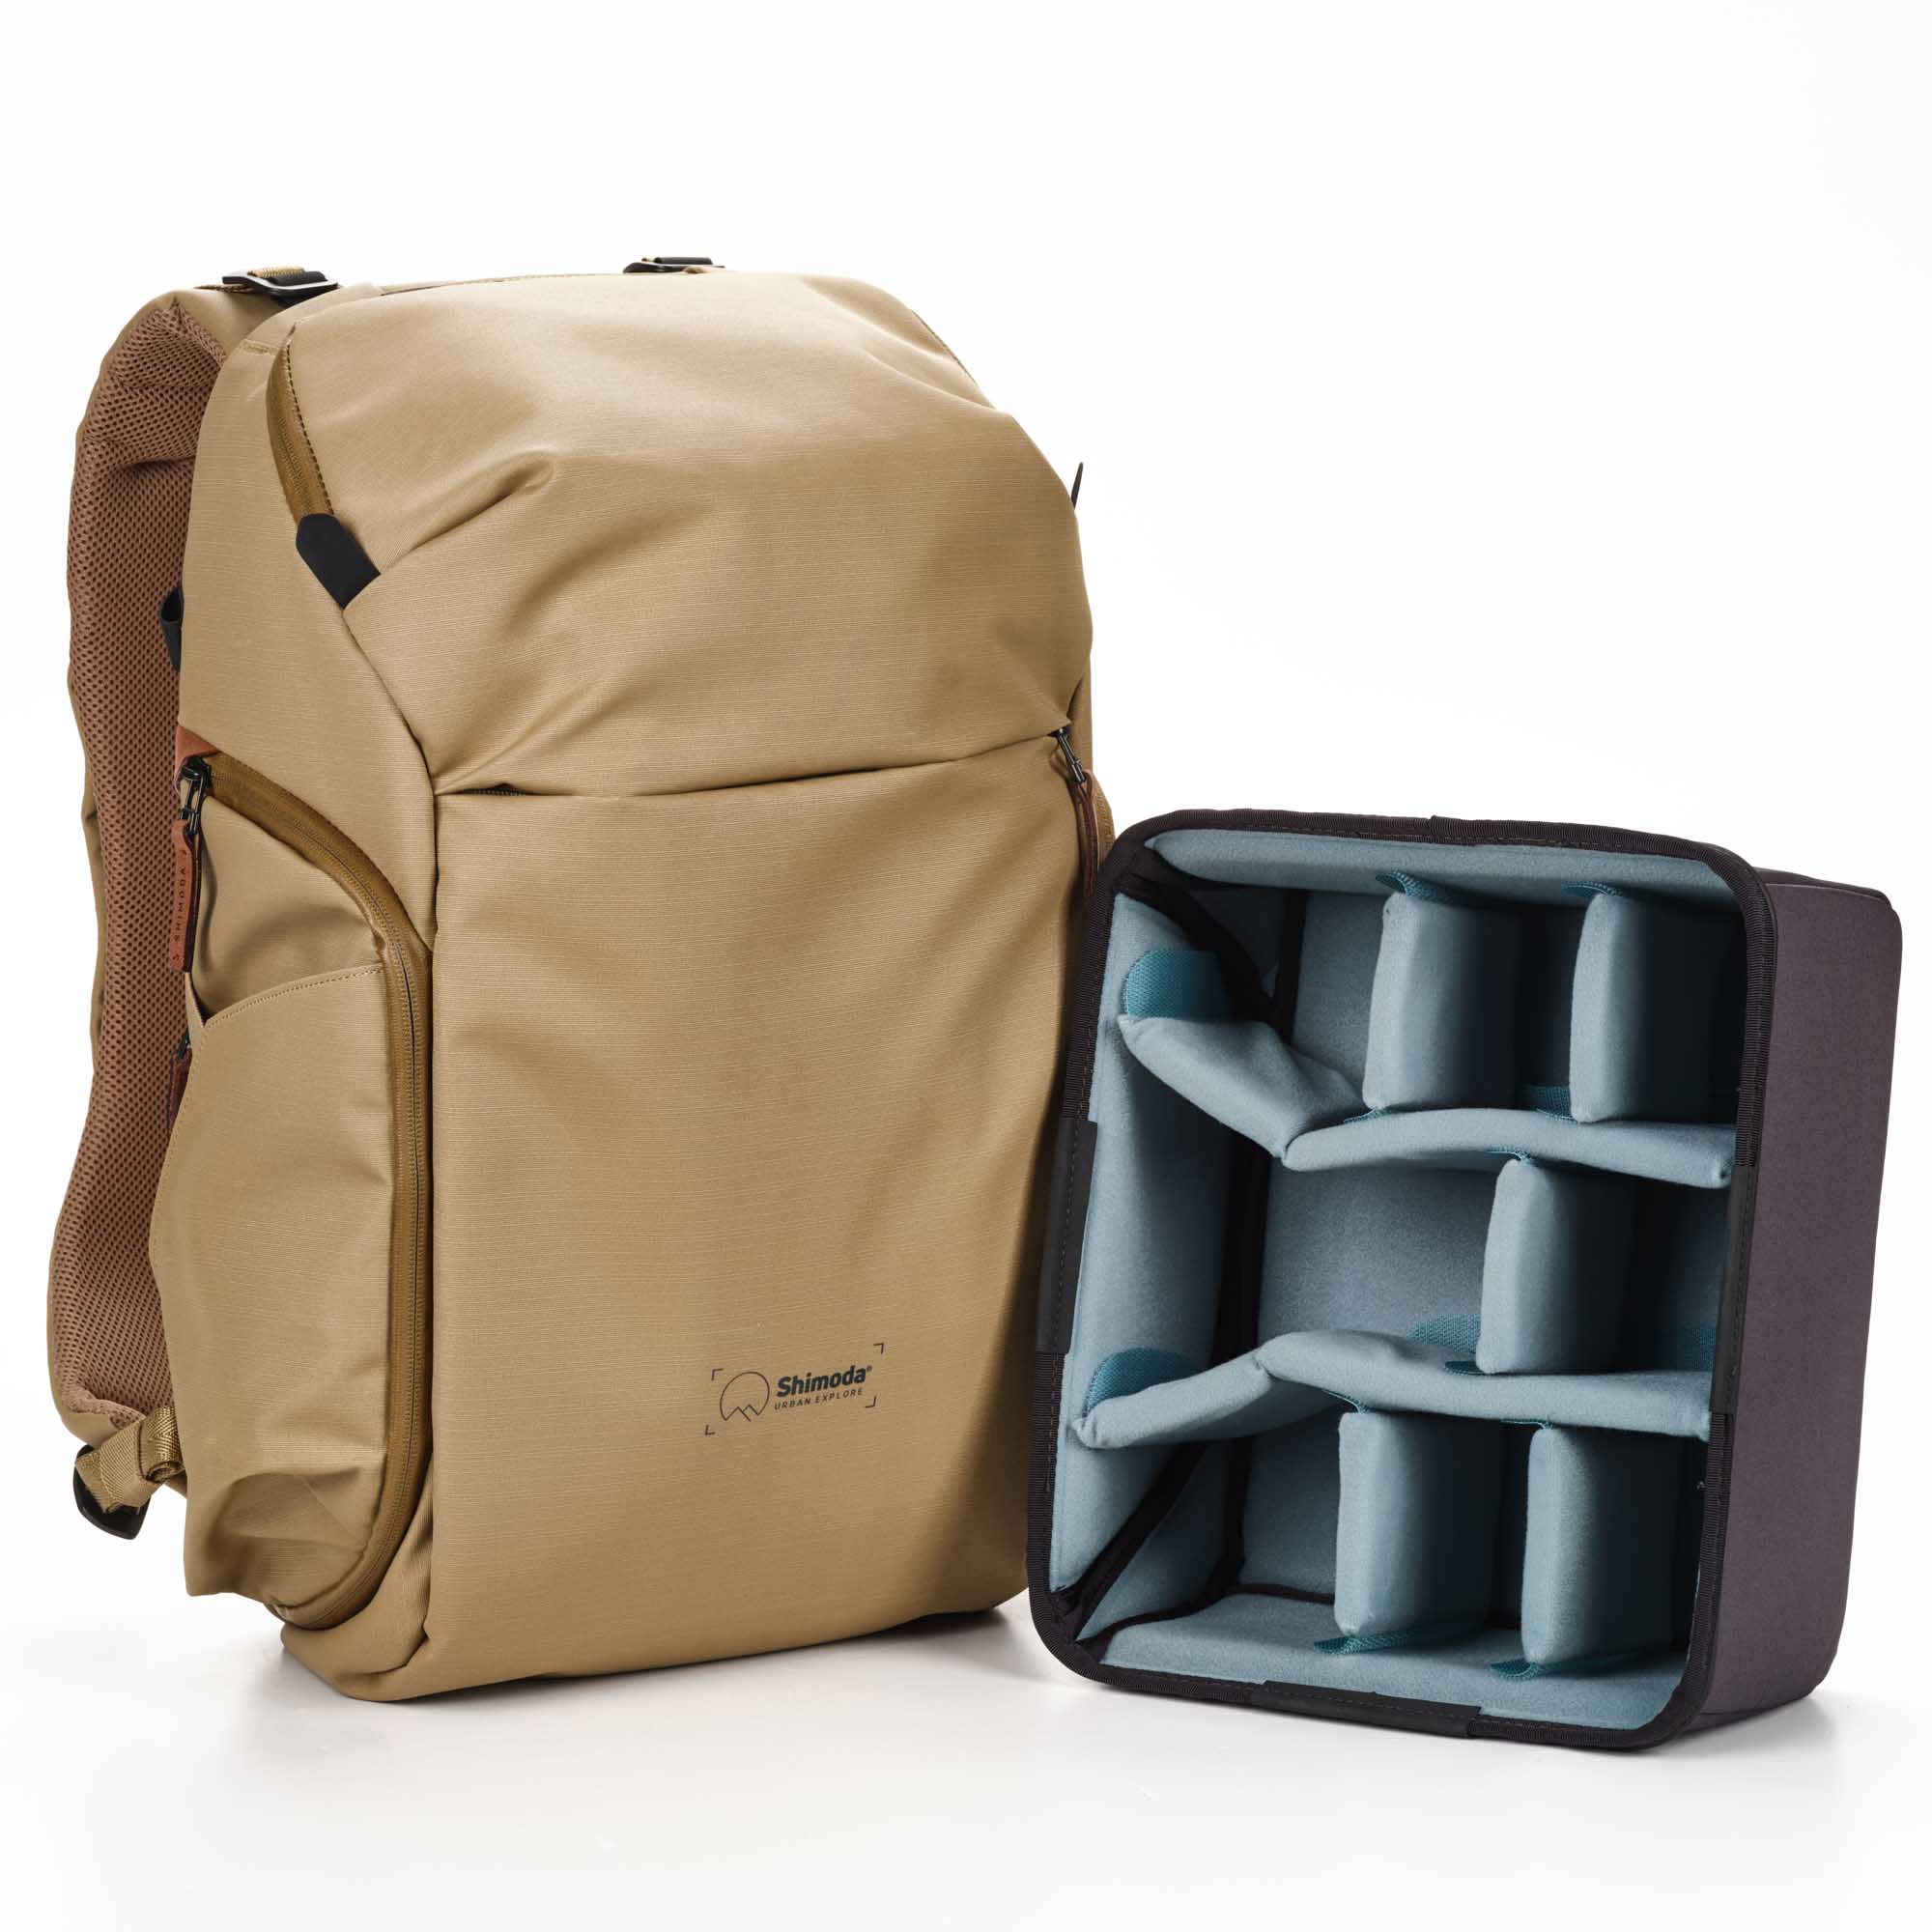 Shimoda Designs Explore 25 Rucksack in Beige, Frontal links und mit Camera Cube Insert rechts daneben